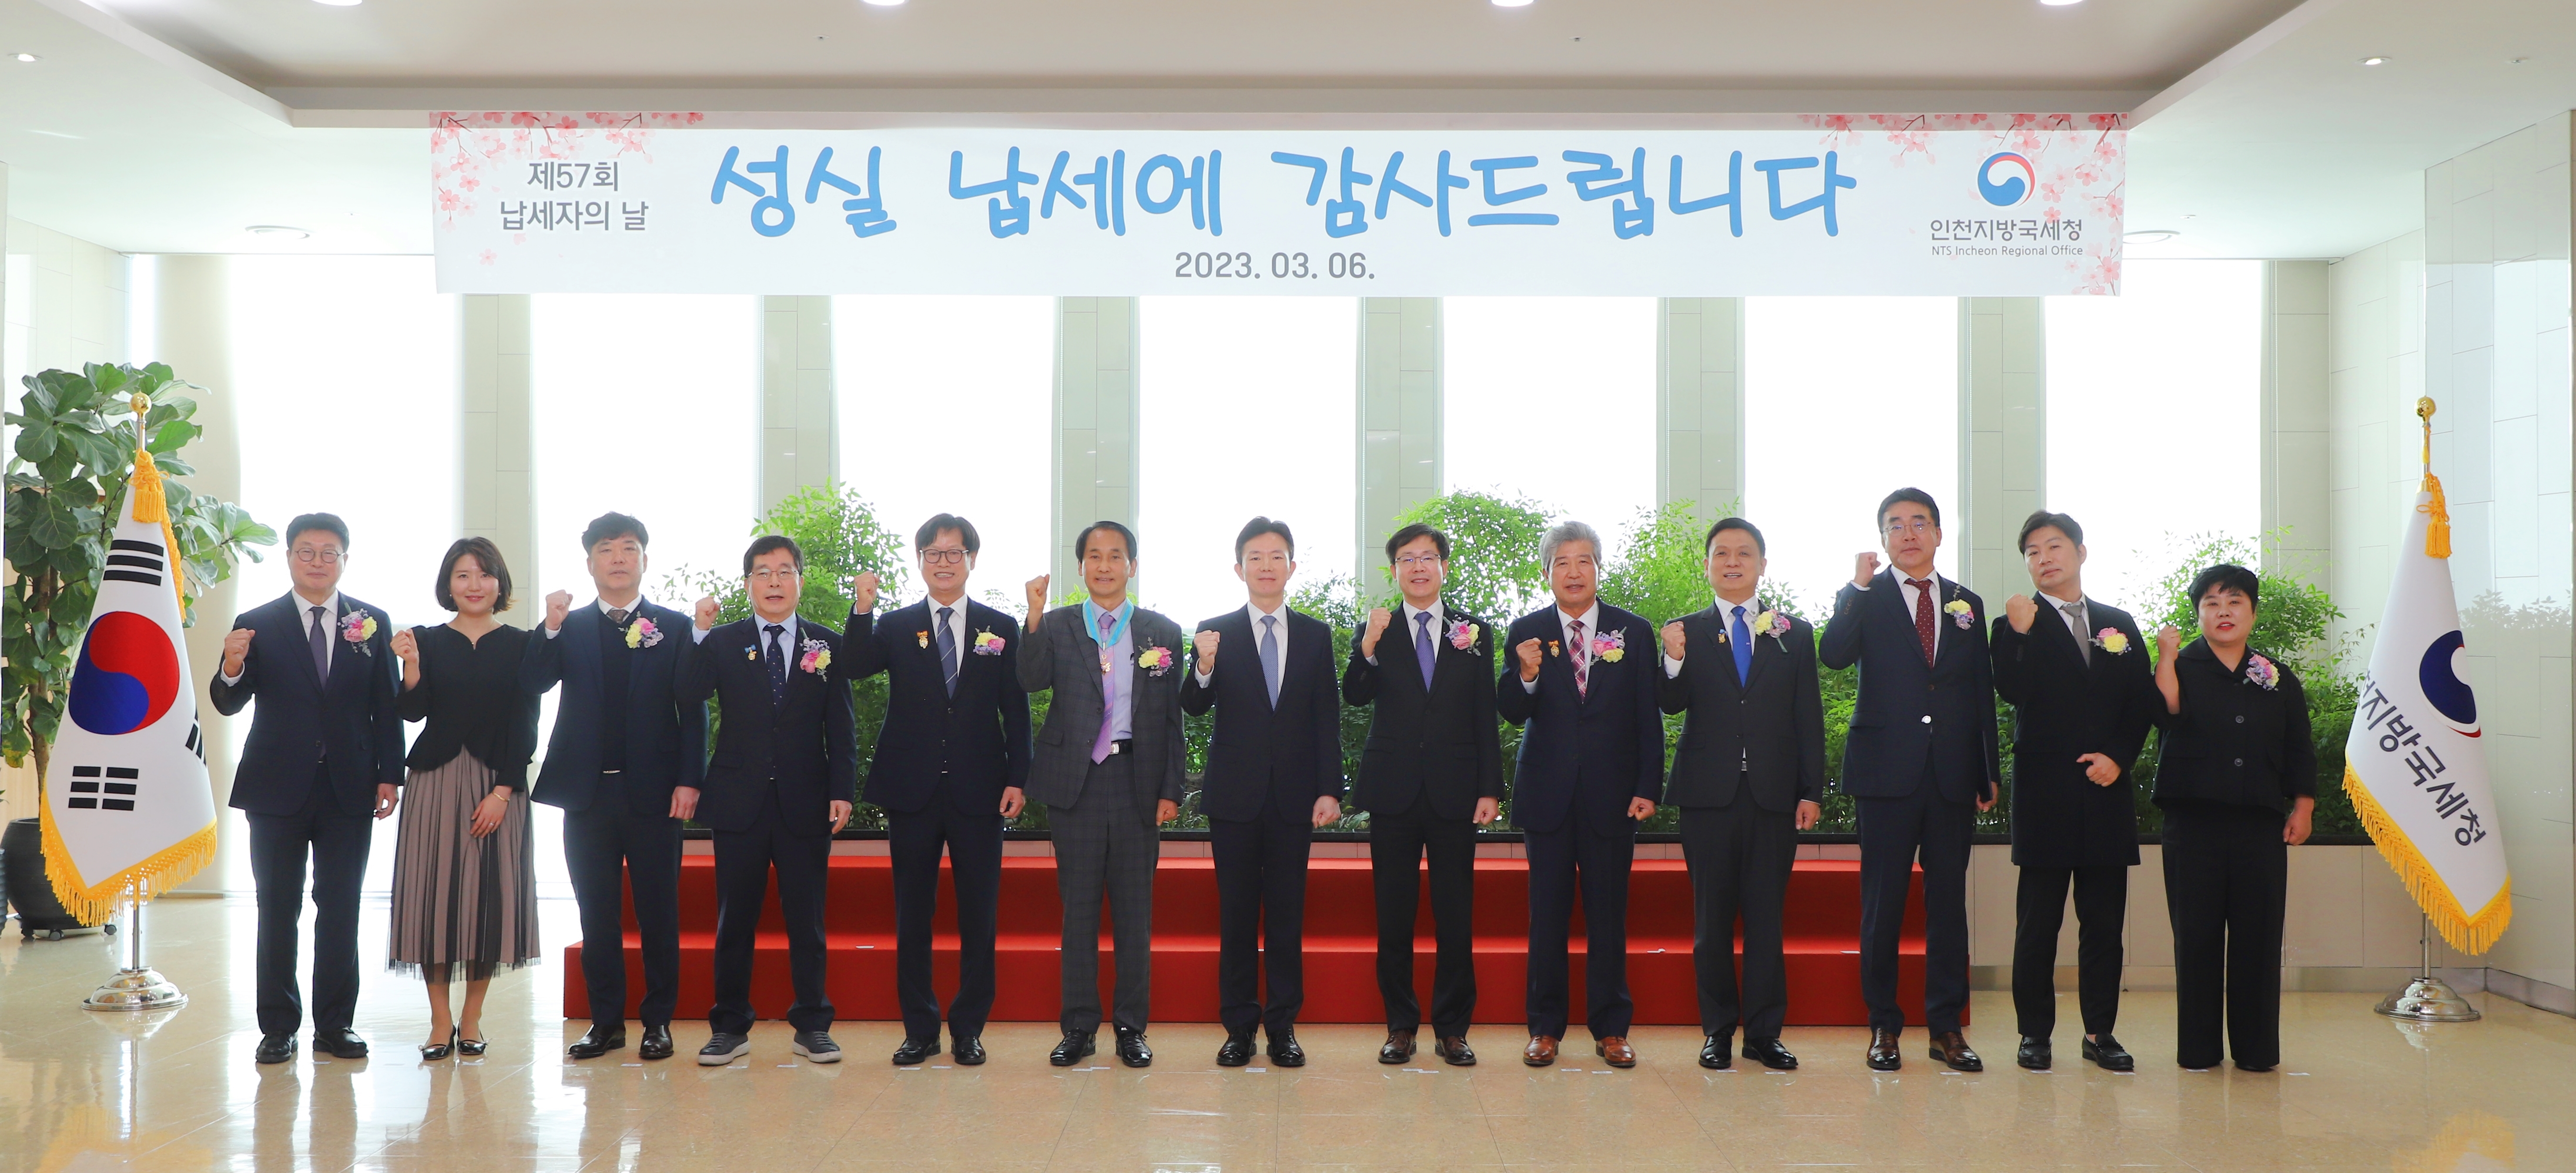 인천지방국세청, 제57회 납세자의 날 기념 행사 개최